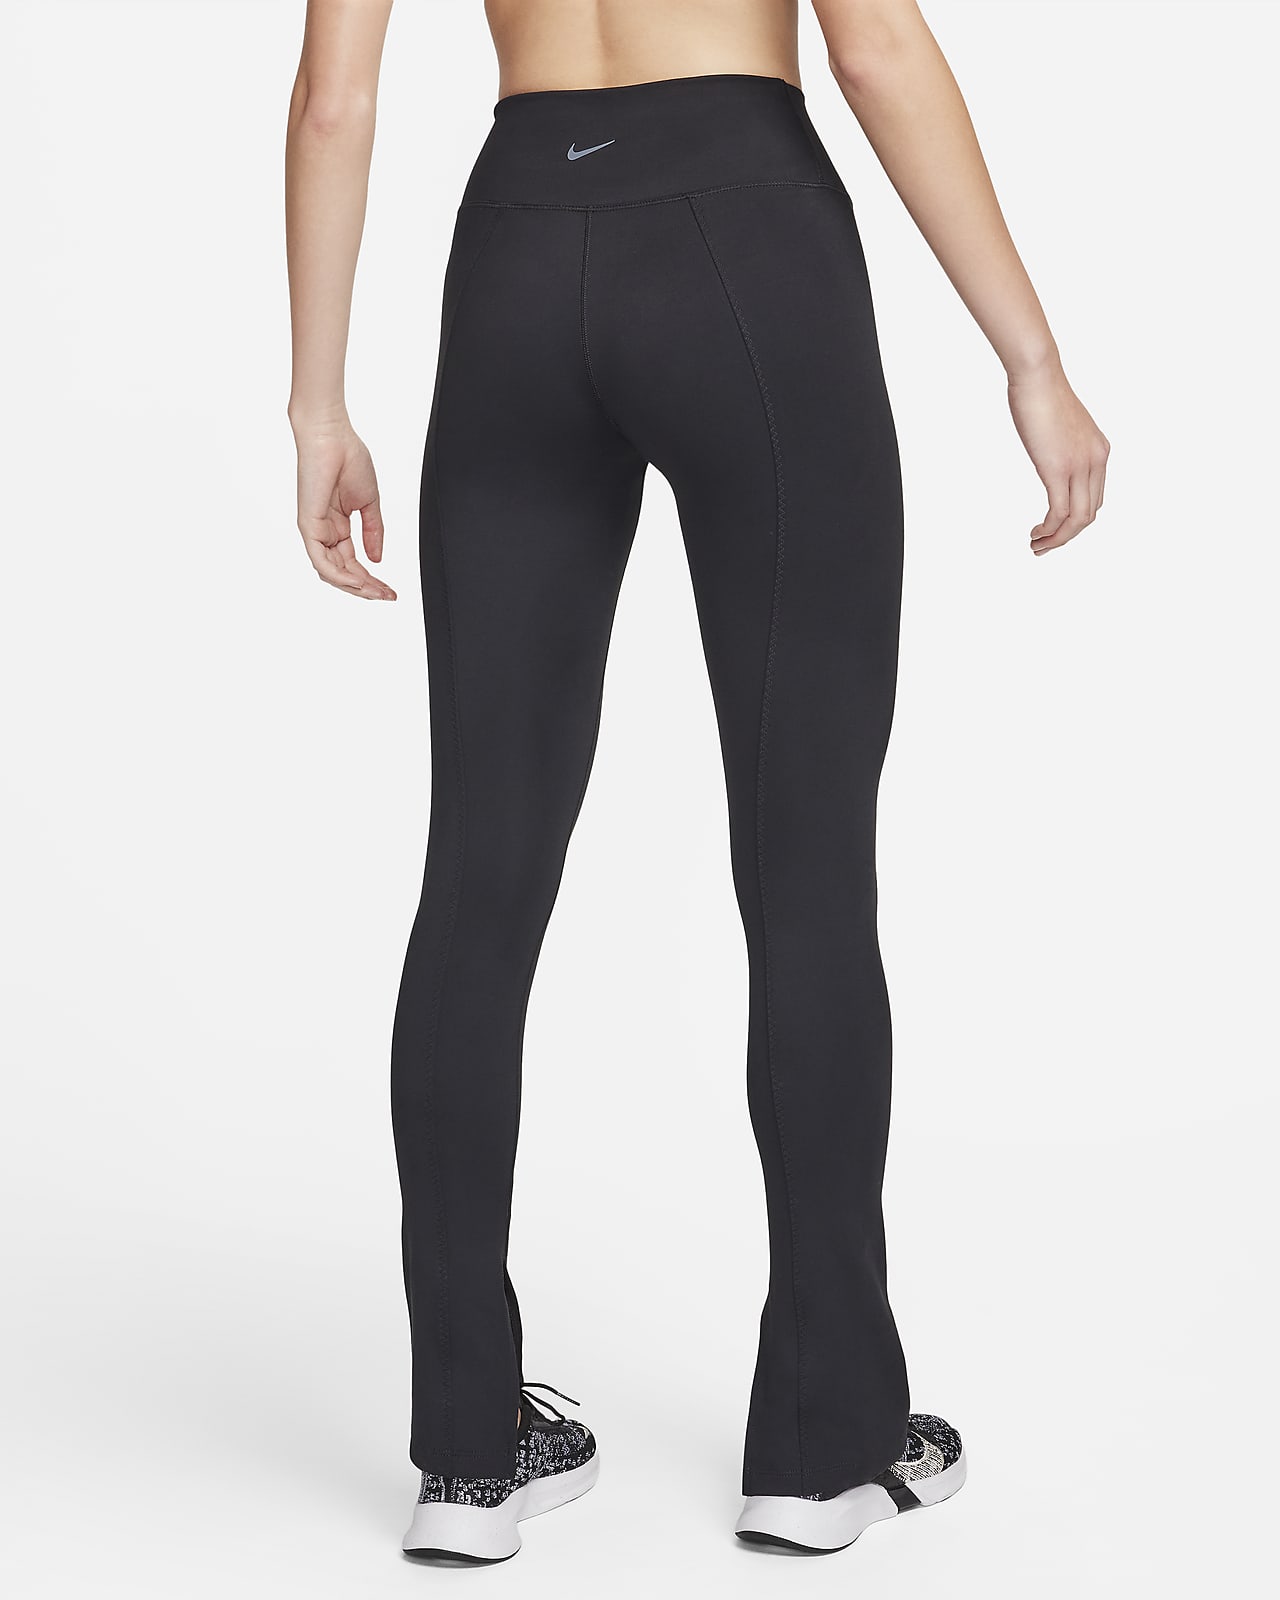 Nike Power Yoga Pants Black / Black